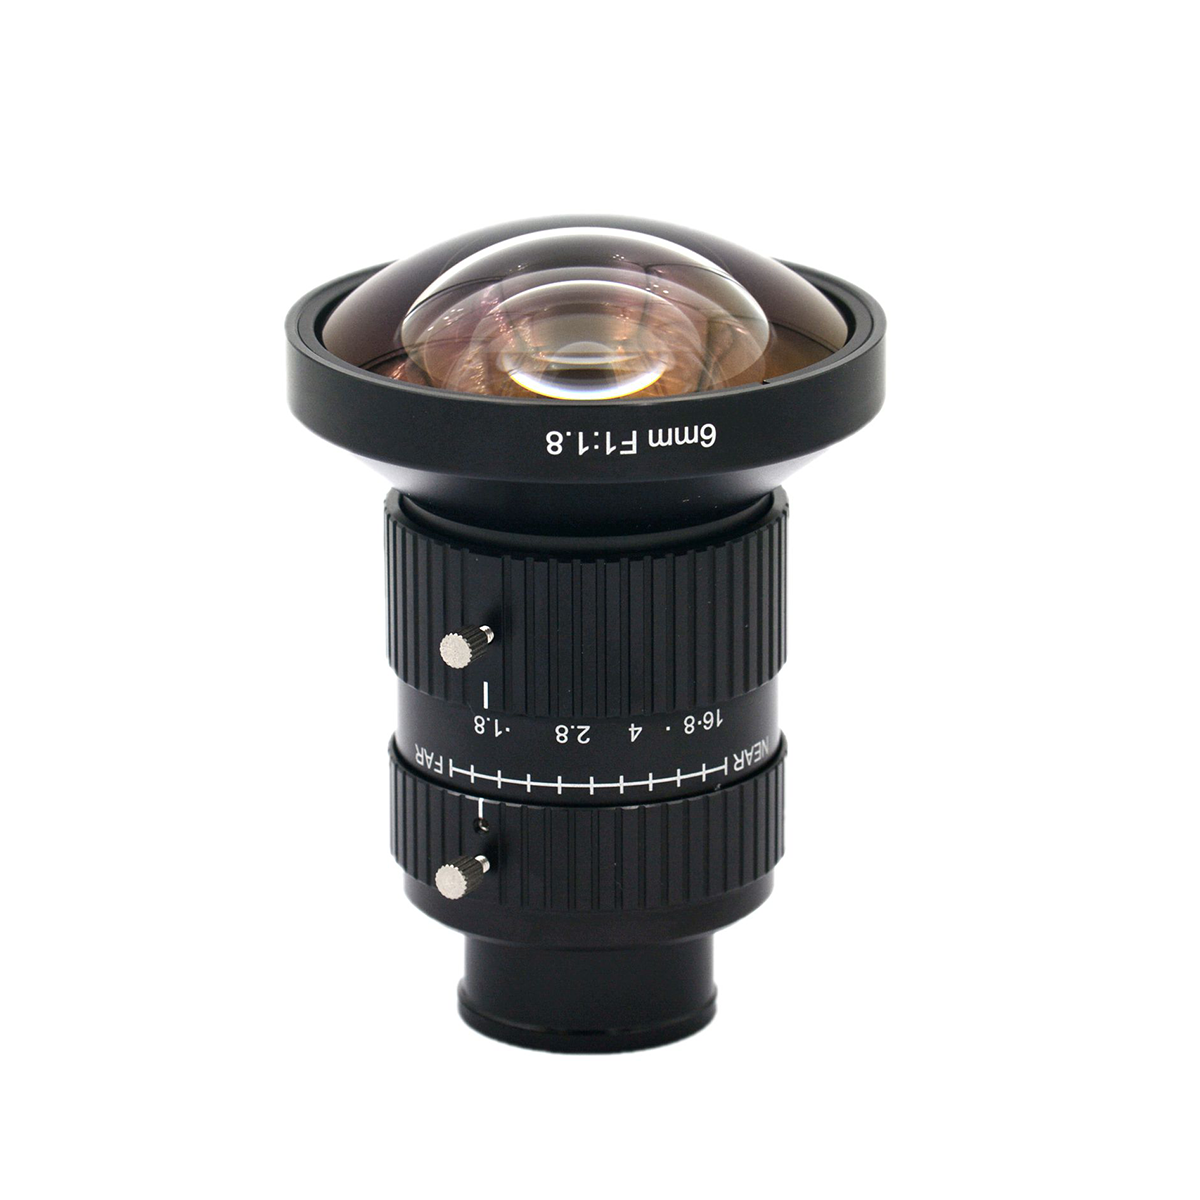 6mm焦距 20MP 产业相机赏金女王
 手动光圈 定焦赏金女王
 CS接口 1.1